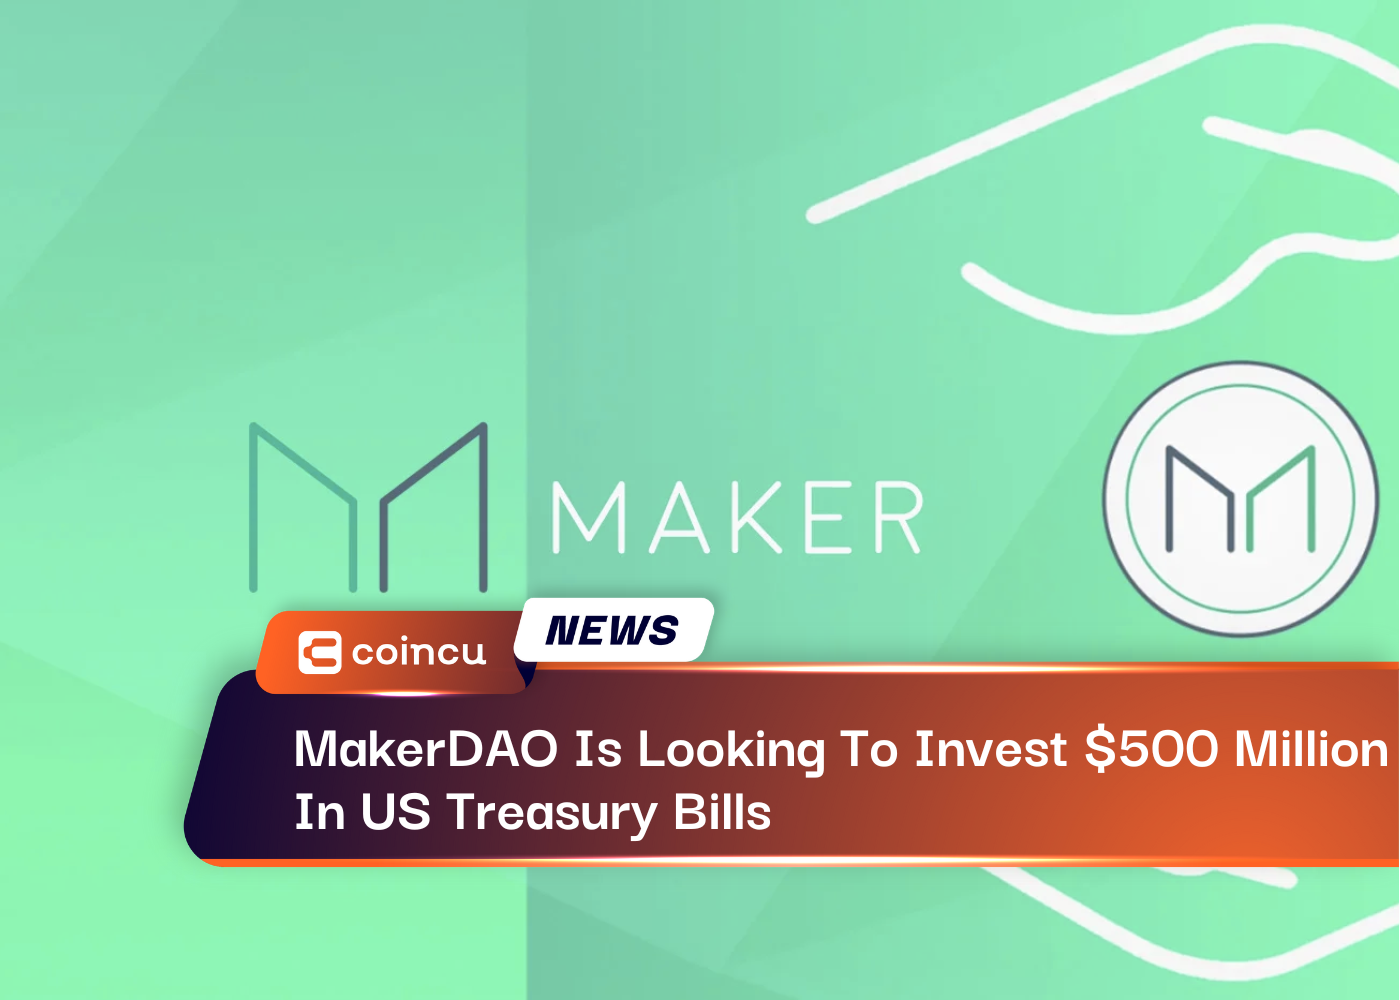 MakerDAO busca invertir 500 millones de dólares en letras del Tesoro de EE. UU.